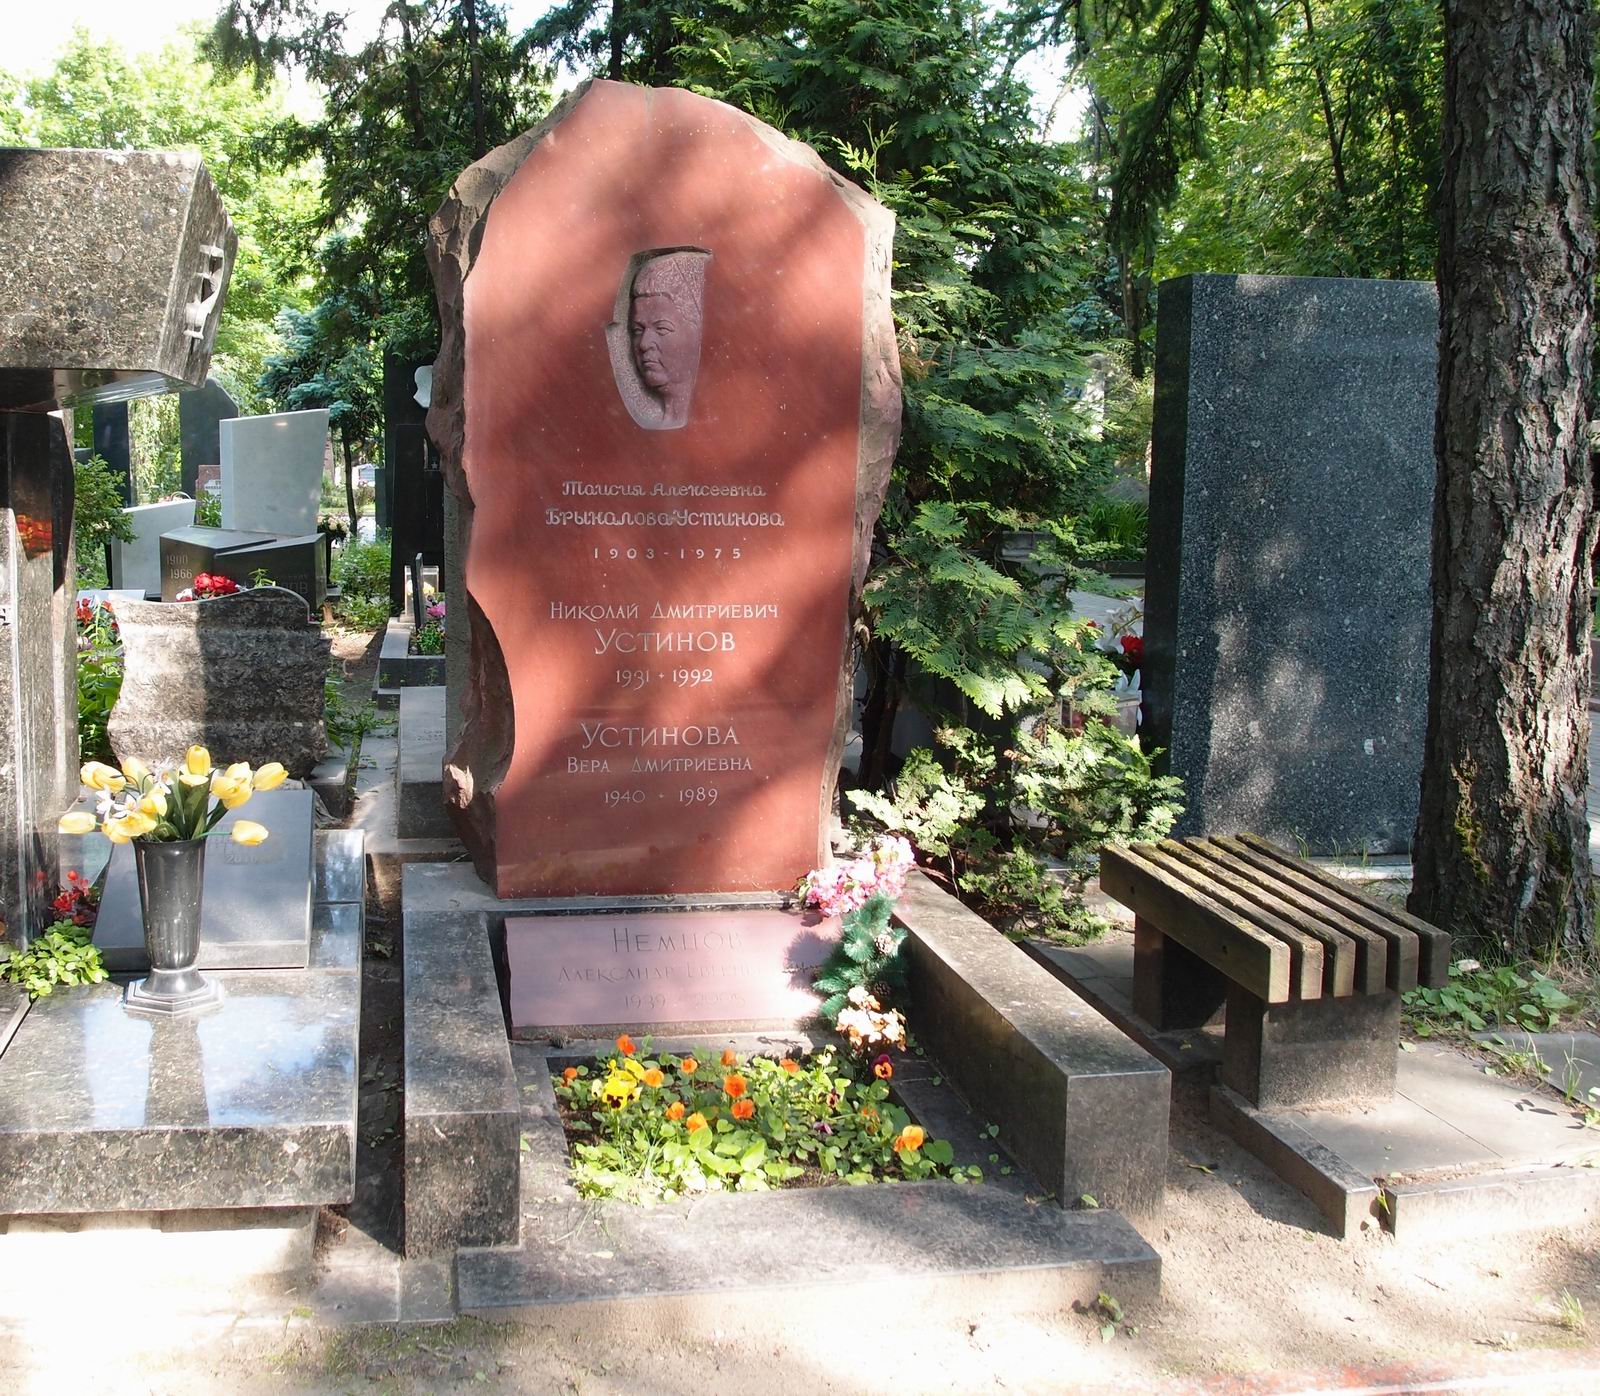 Памятник на могиле Брыкаловой-Устиновой Т.А. (1903-1975) и Устинова Н.Д. (1931-1992), ск. Л.Кербель, на Новодевичьем кладбище (6-28-9).